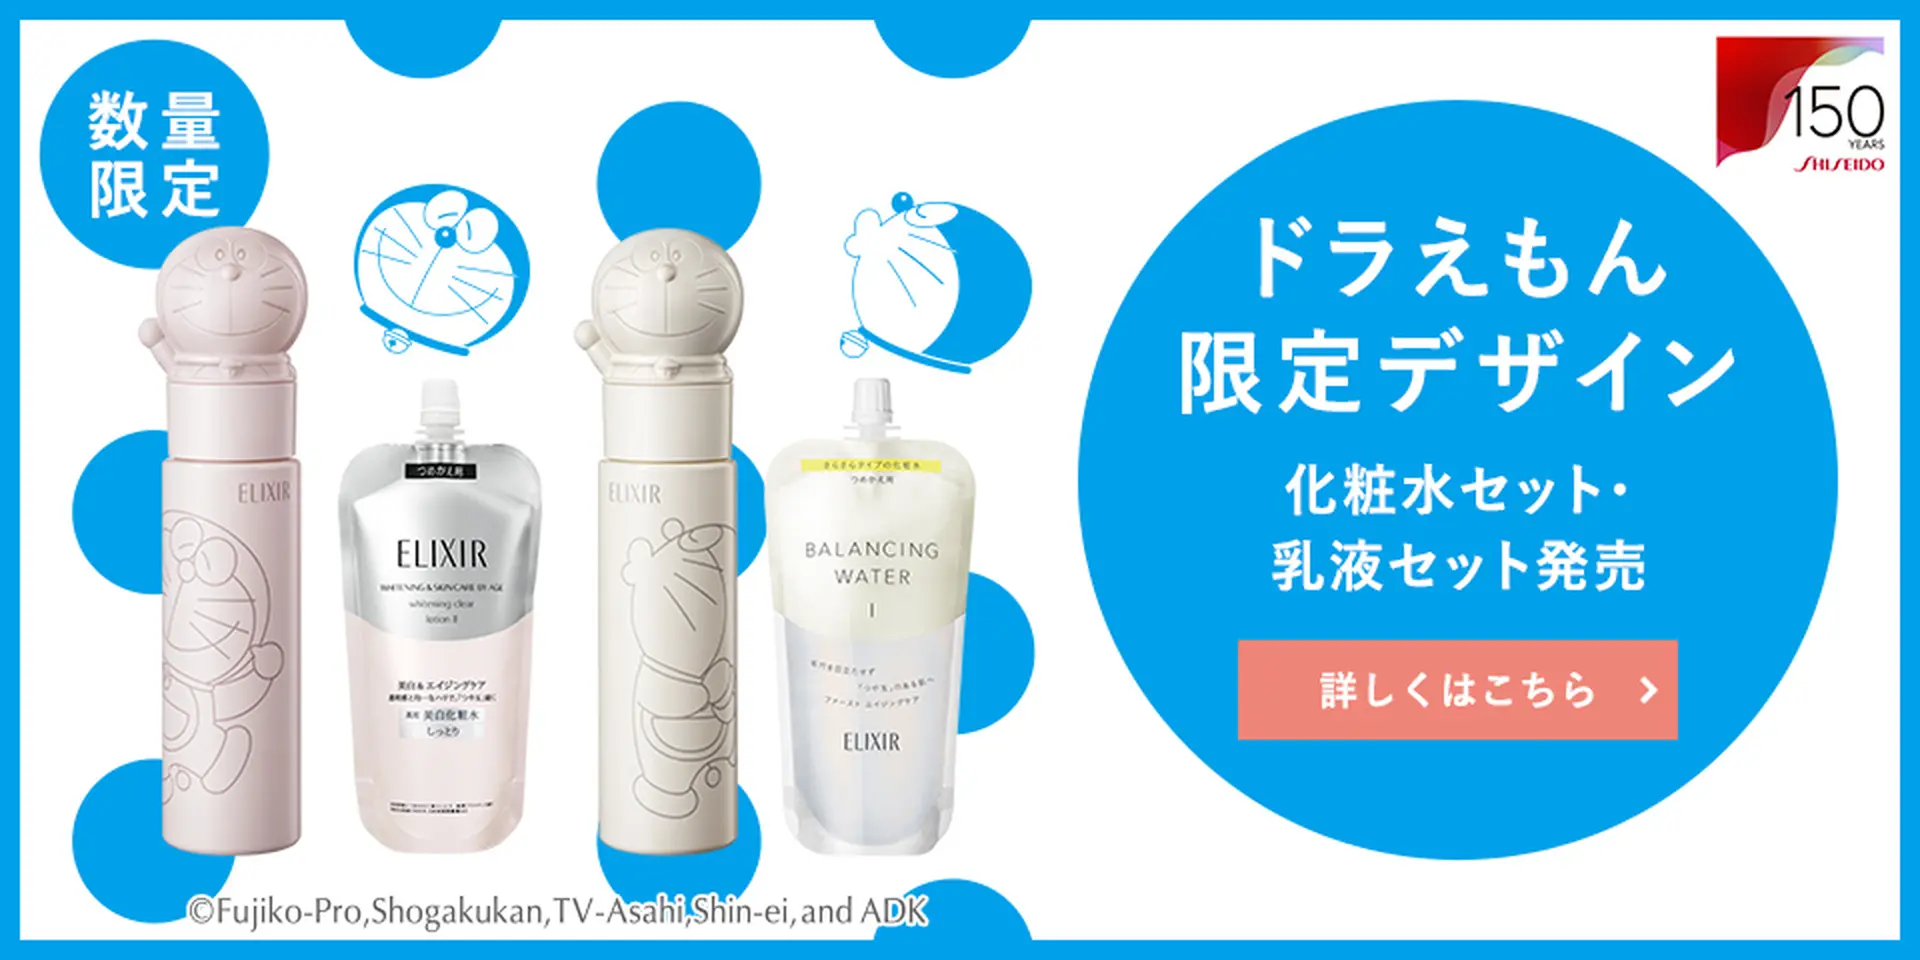 ドラえもんデザインの化粧水セット・乳液セット発売